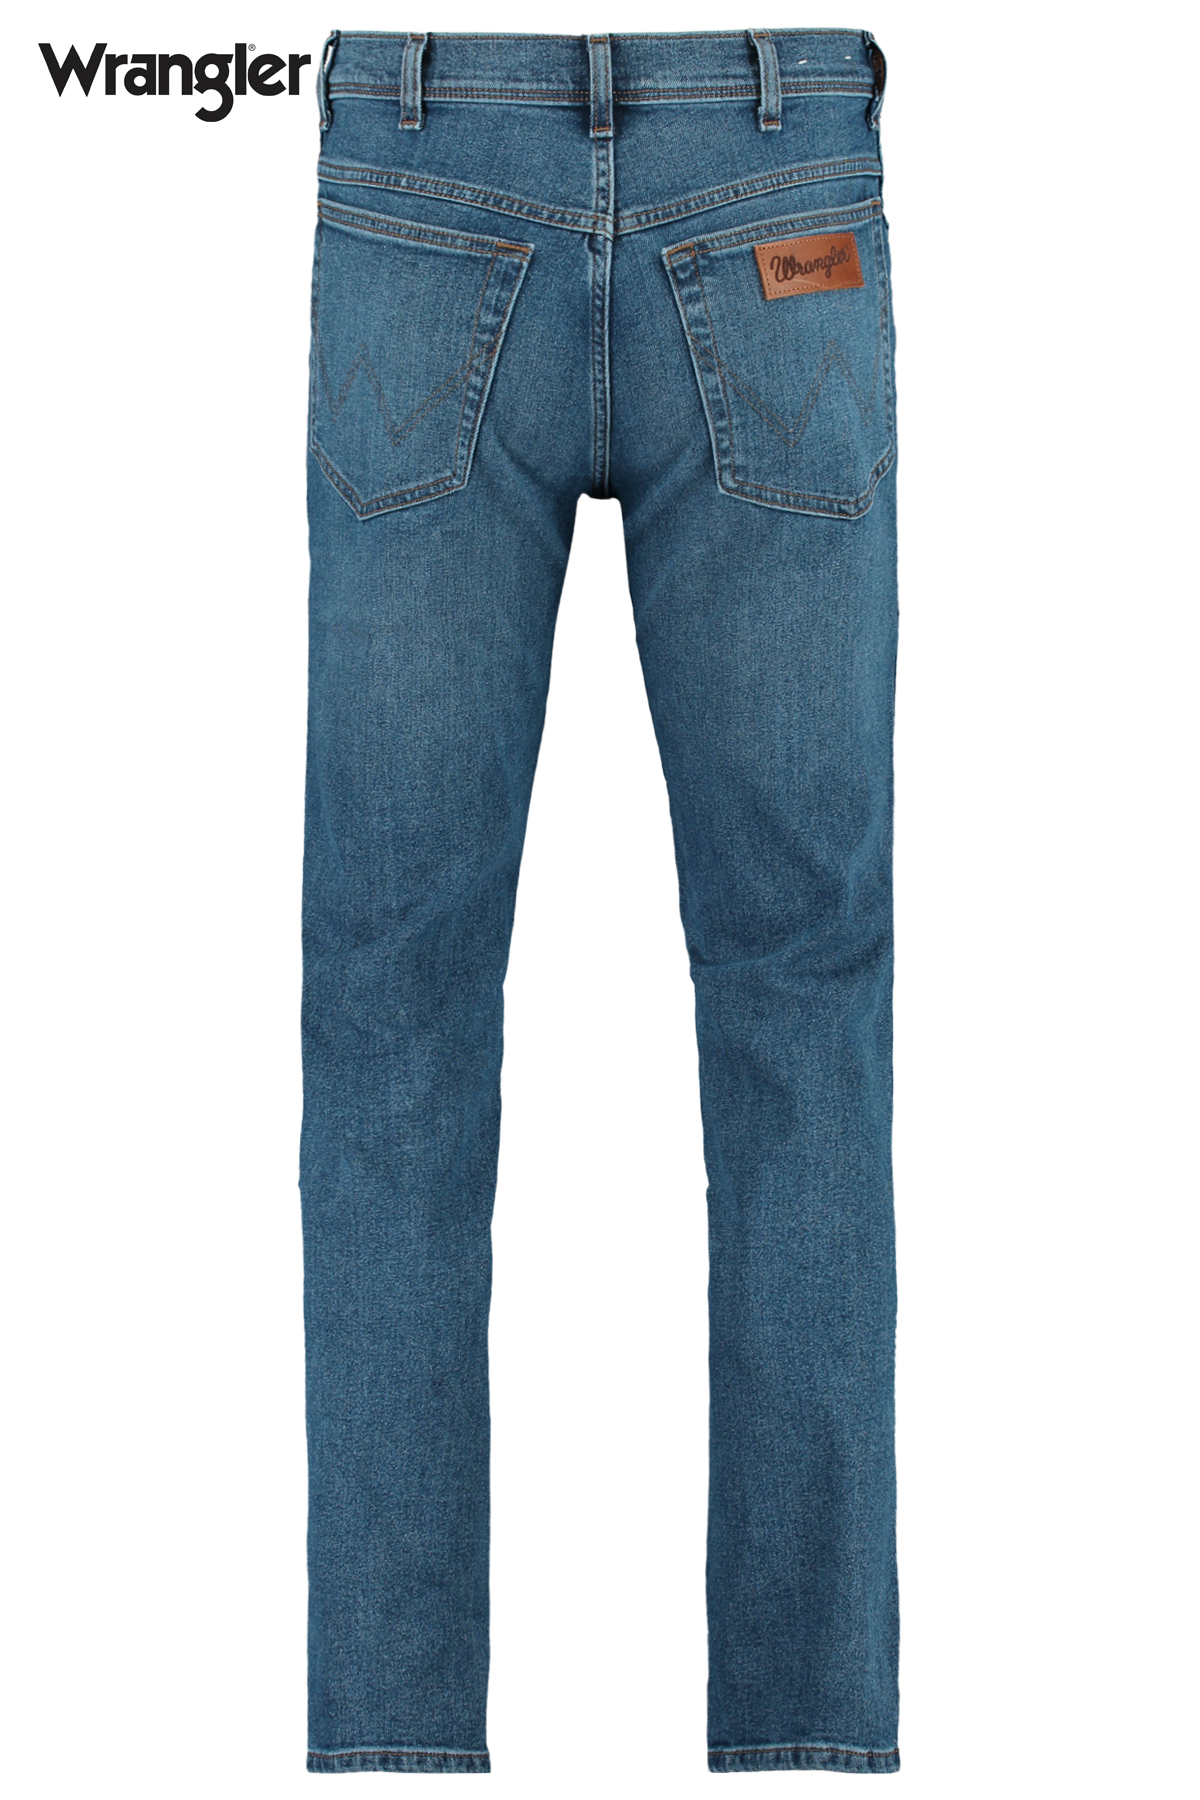 Men Wrangler jeans slim fit Denim blue | America Today